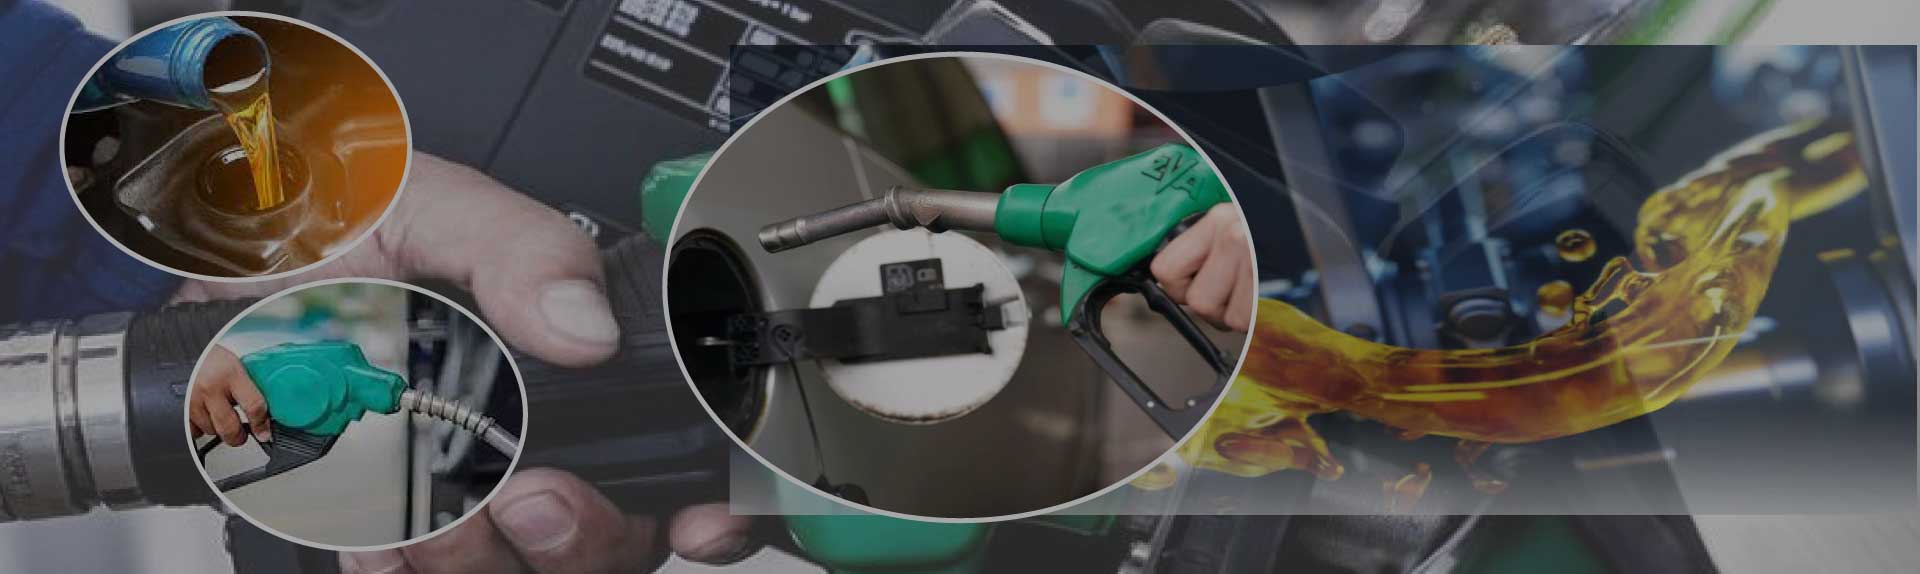 Diesel & Petrol-Prices in-UAE